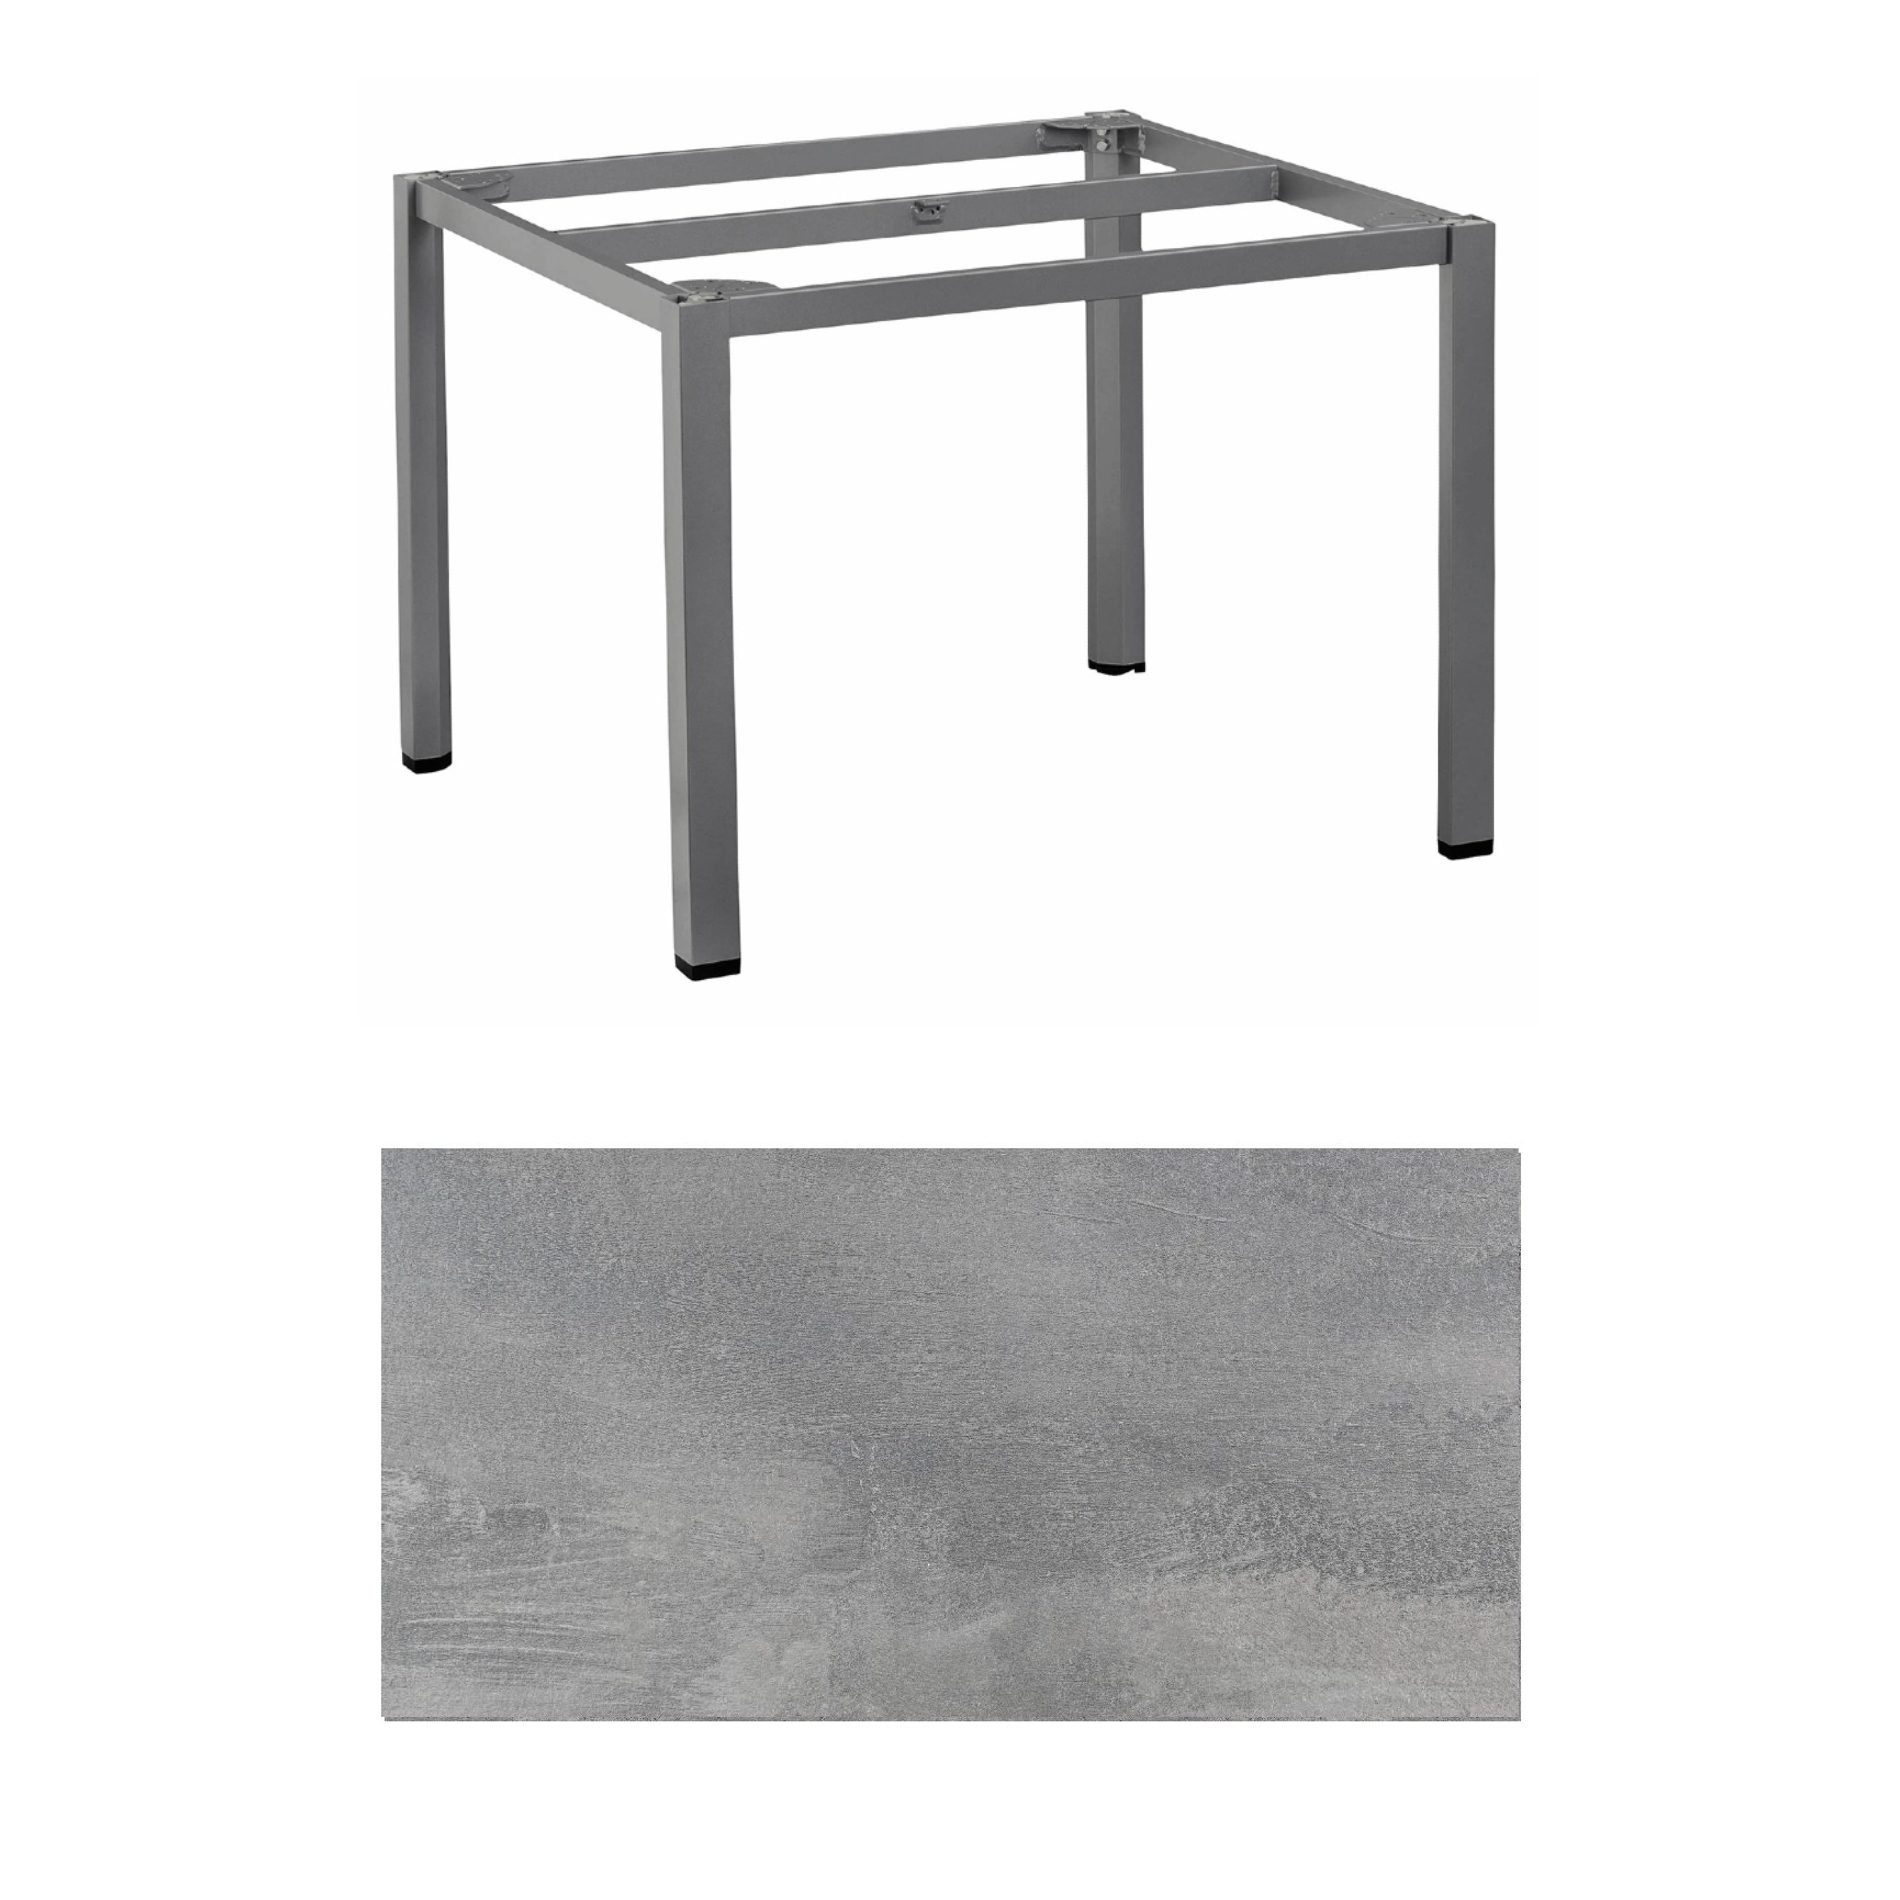 Kettler "Cubic" Tischgestell 95x95 cm, Aluminium anthrazit mit HPL-Platte silber-grau